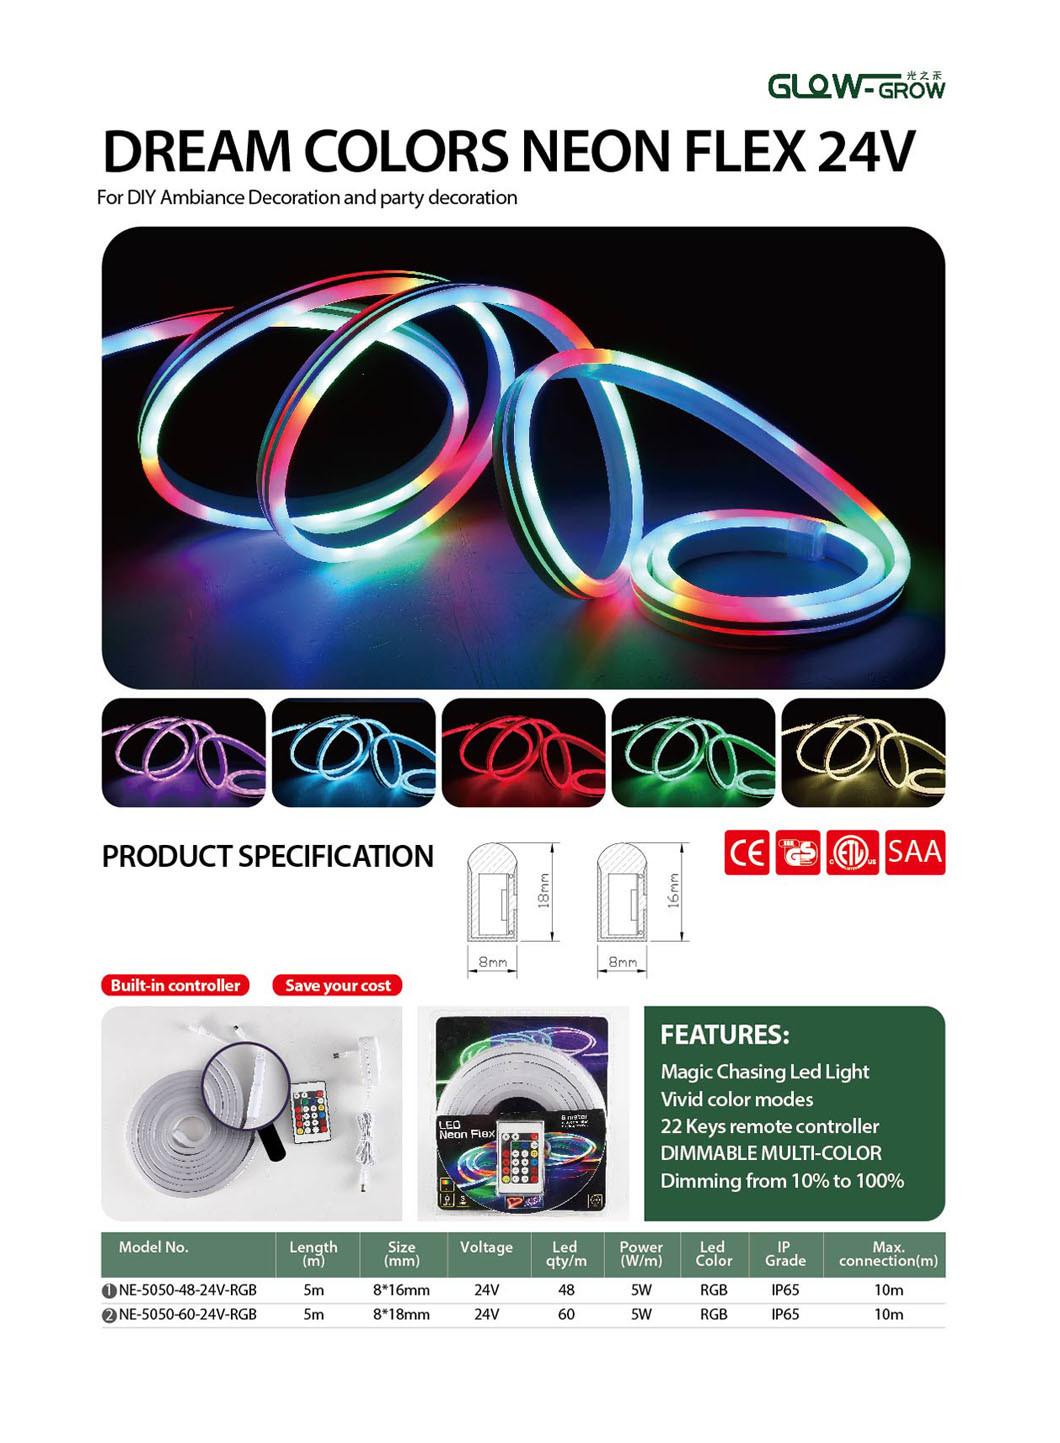 IP65 Waterproof 24V LED Dream Neon Flex Light for LED Lighting Decoration